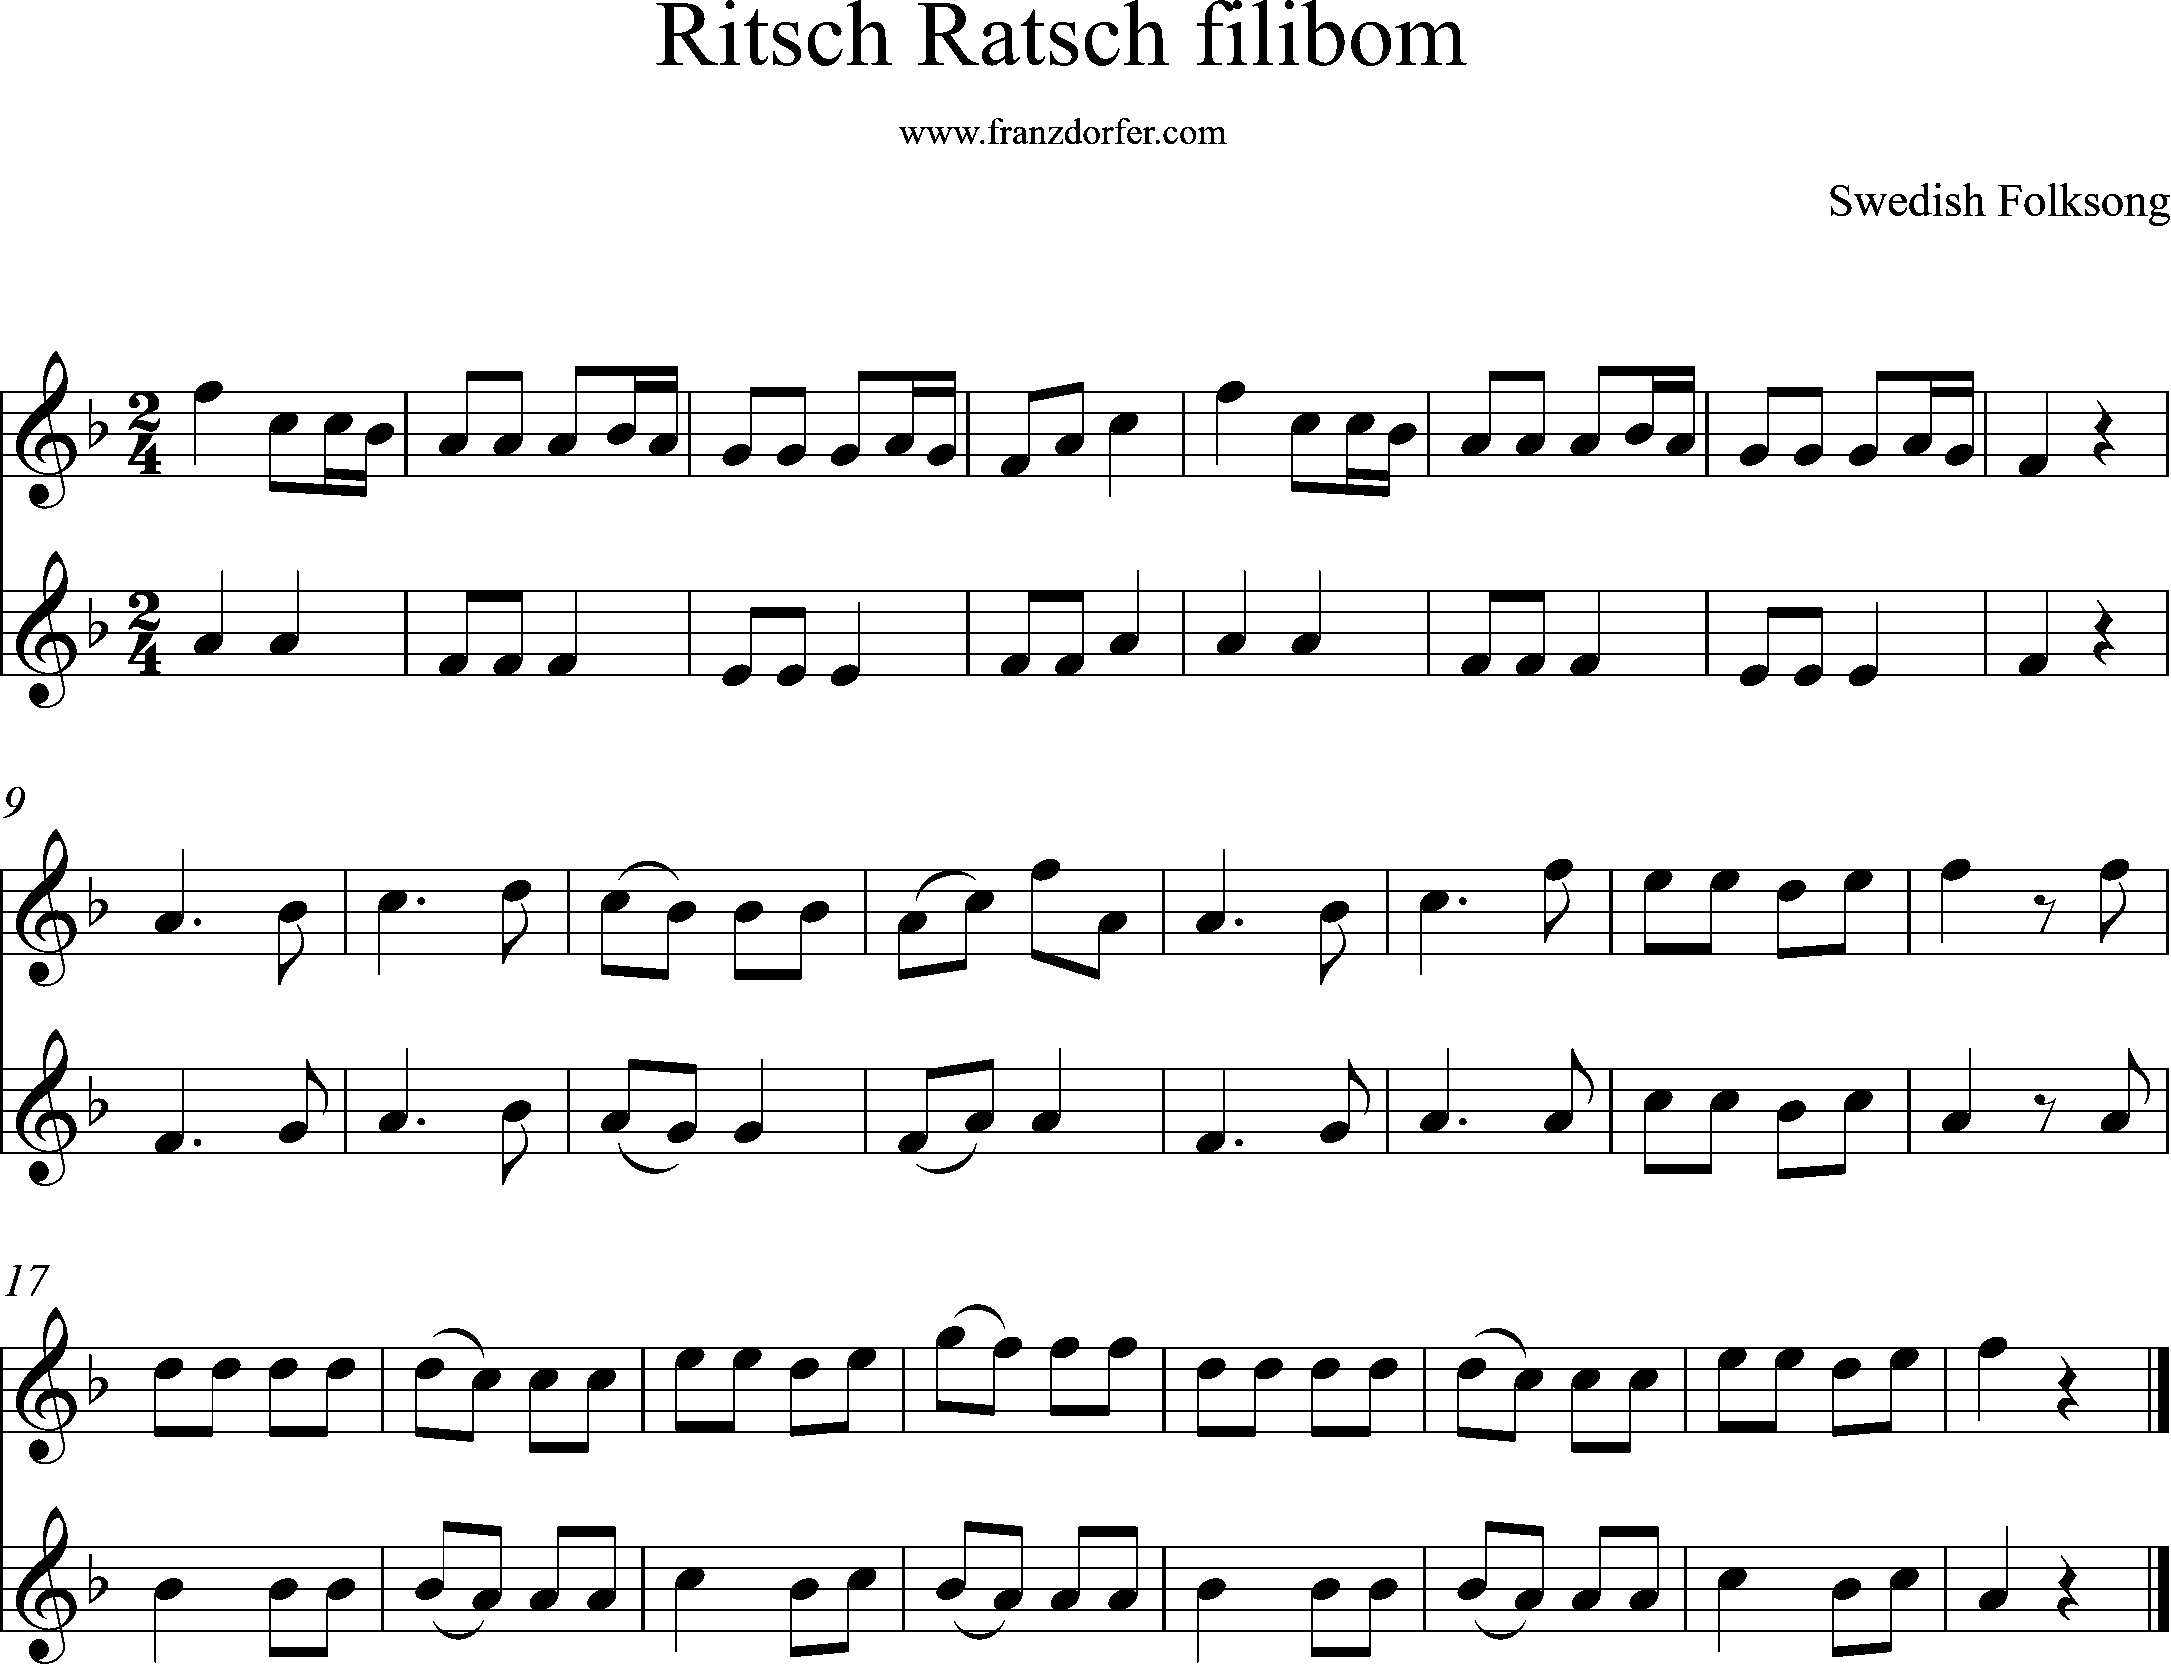 sheetmusic Ritsch ratsch